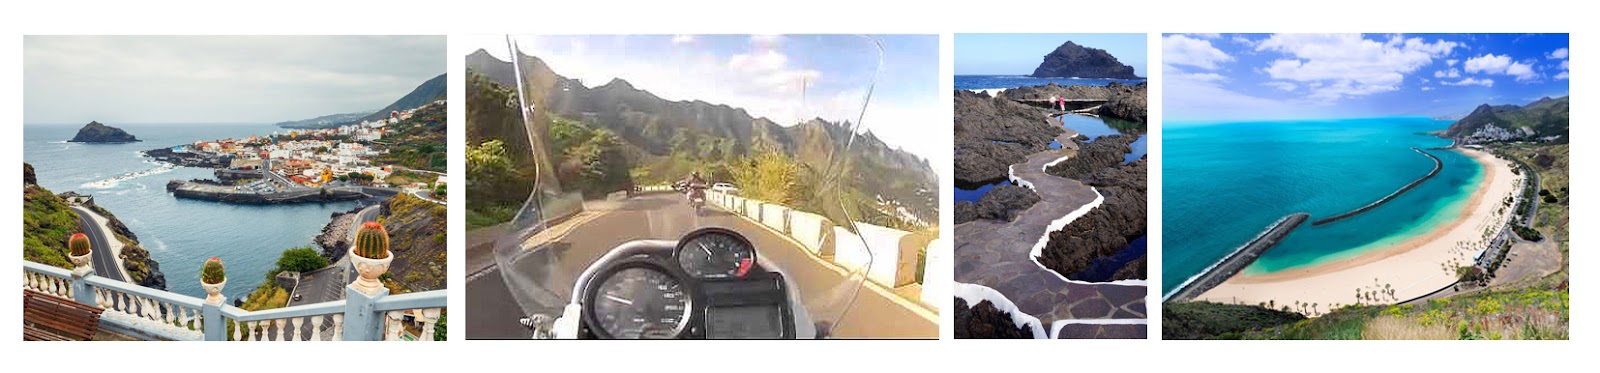 Garachico, las Teresitas. Subida Anaga. Ruta con moto por Tenerife